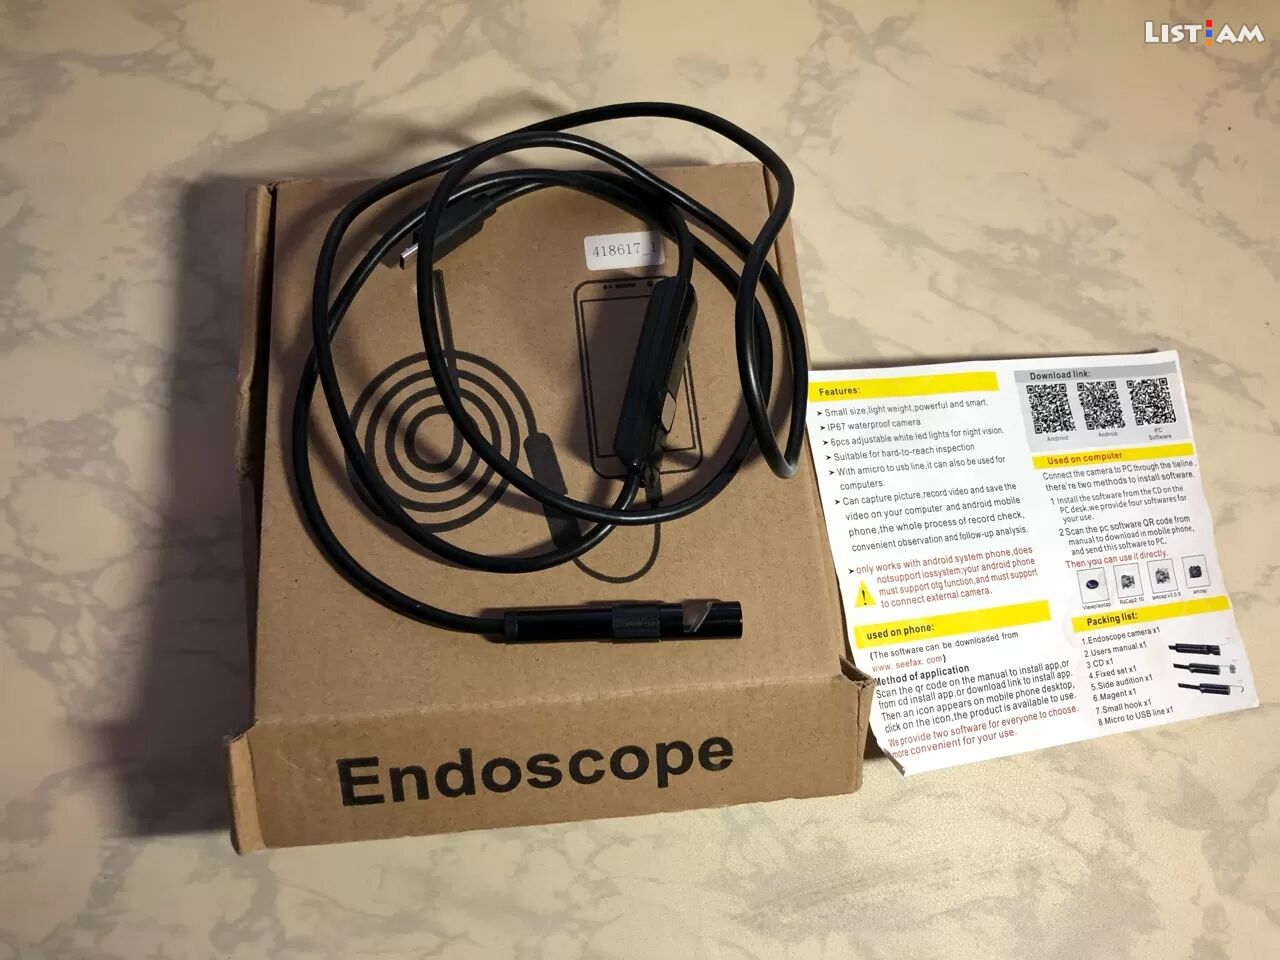 USB endoscope